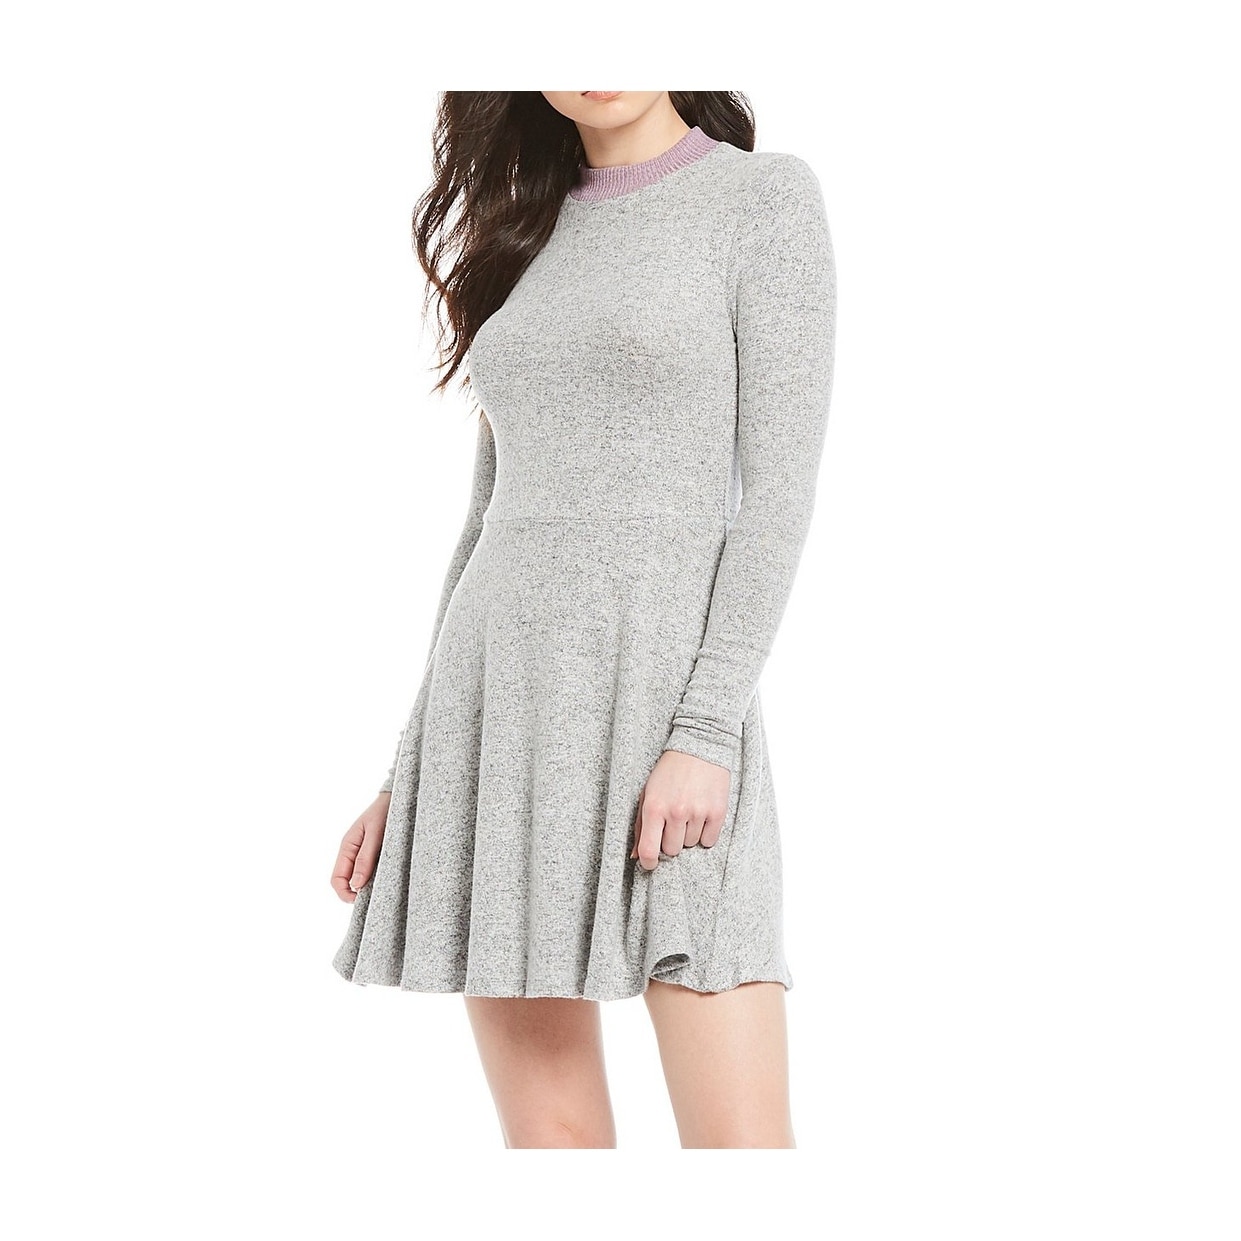 junior sweater dresses